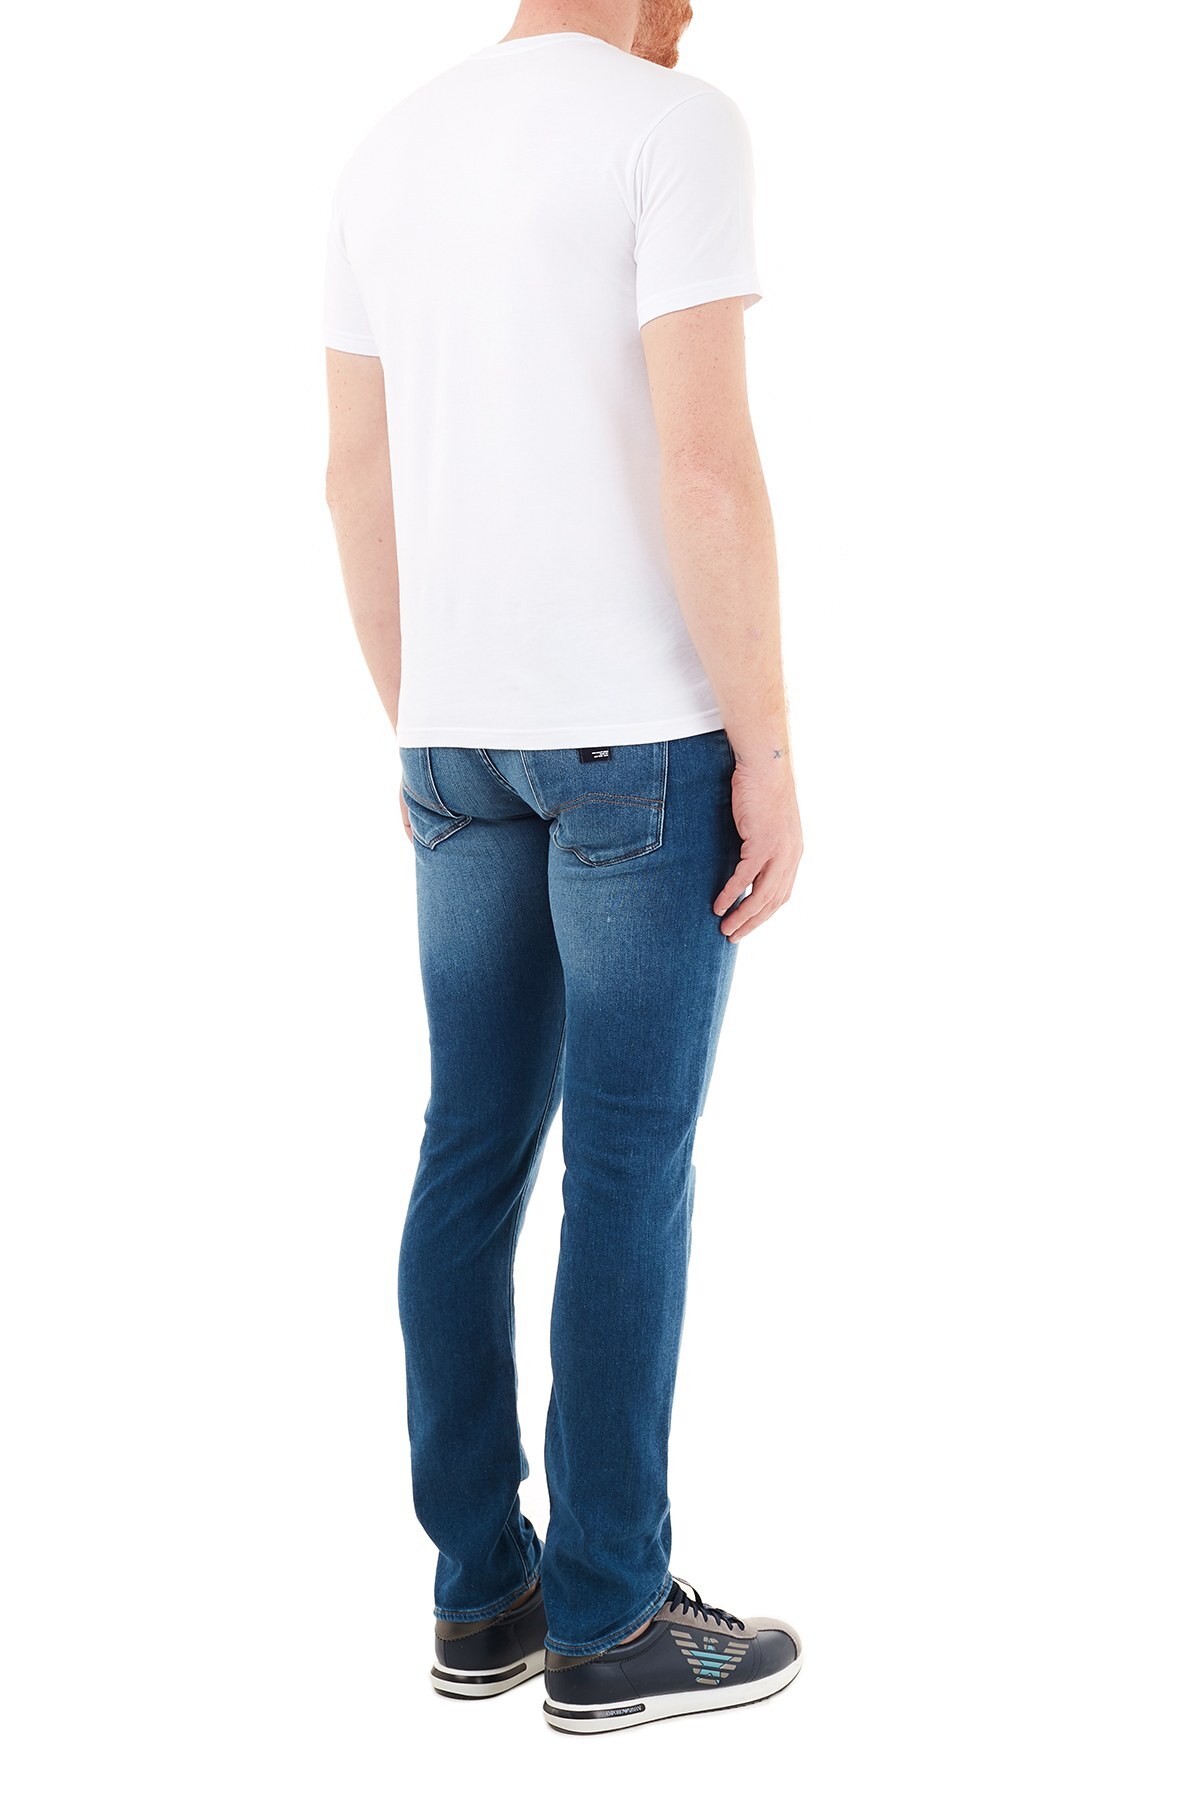 Armani Exchange Pamuklu Slim Fit J13 Jeans Erkek Kot Pantolon 6HZJ13 Z6QMZ 1500 İNDİGO